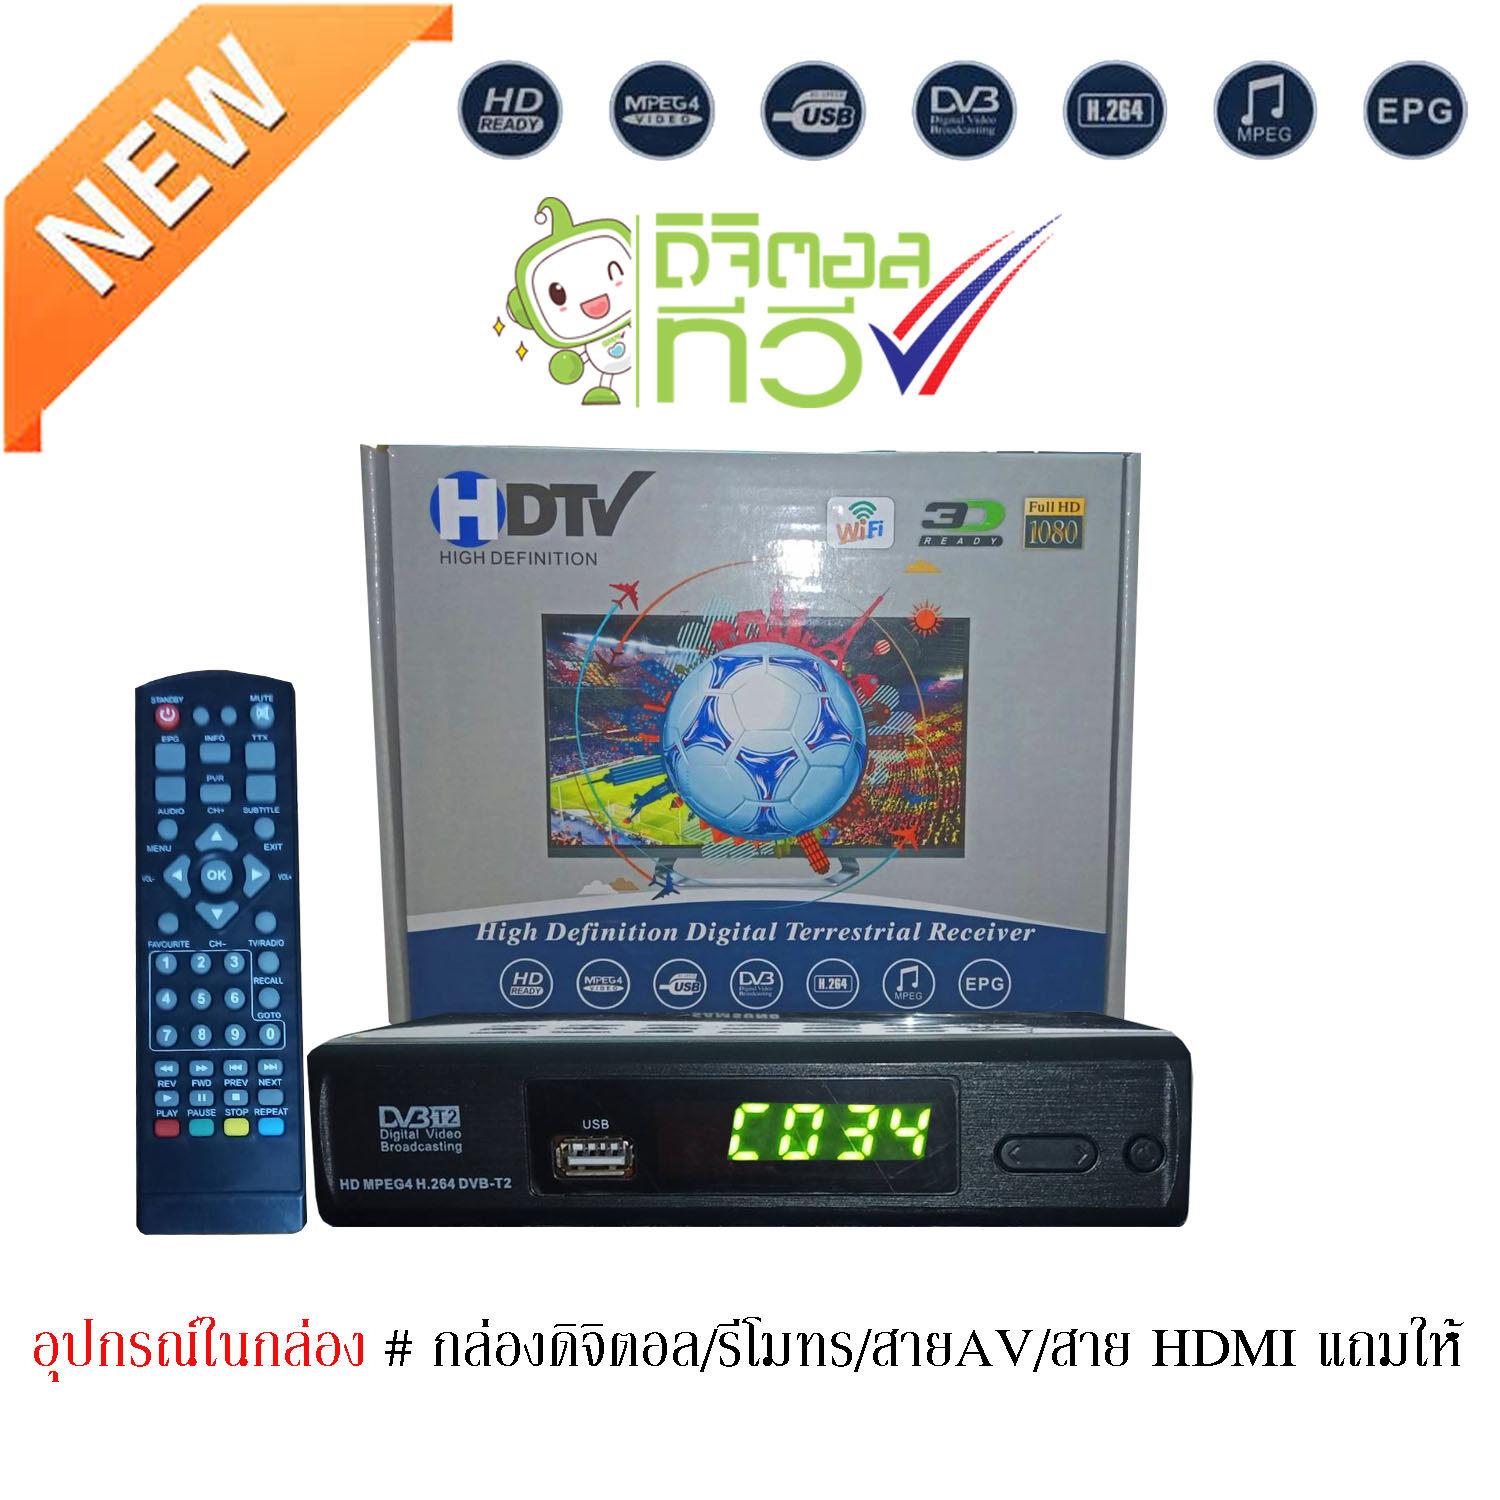 กล่องดิจิตอลทีวี DigitalTV HDTV HD BOX ใช้ร่วมกับเสาอากาศทีวี คมชัดด้วยระบบดิจิตอล สินค้าคุณภาพ สินค้าพร้อมส่ง